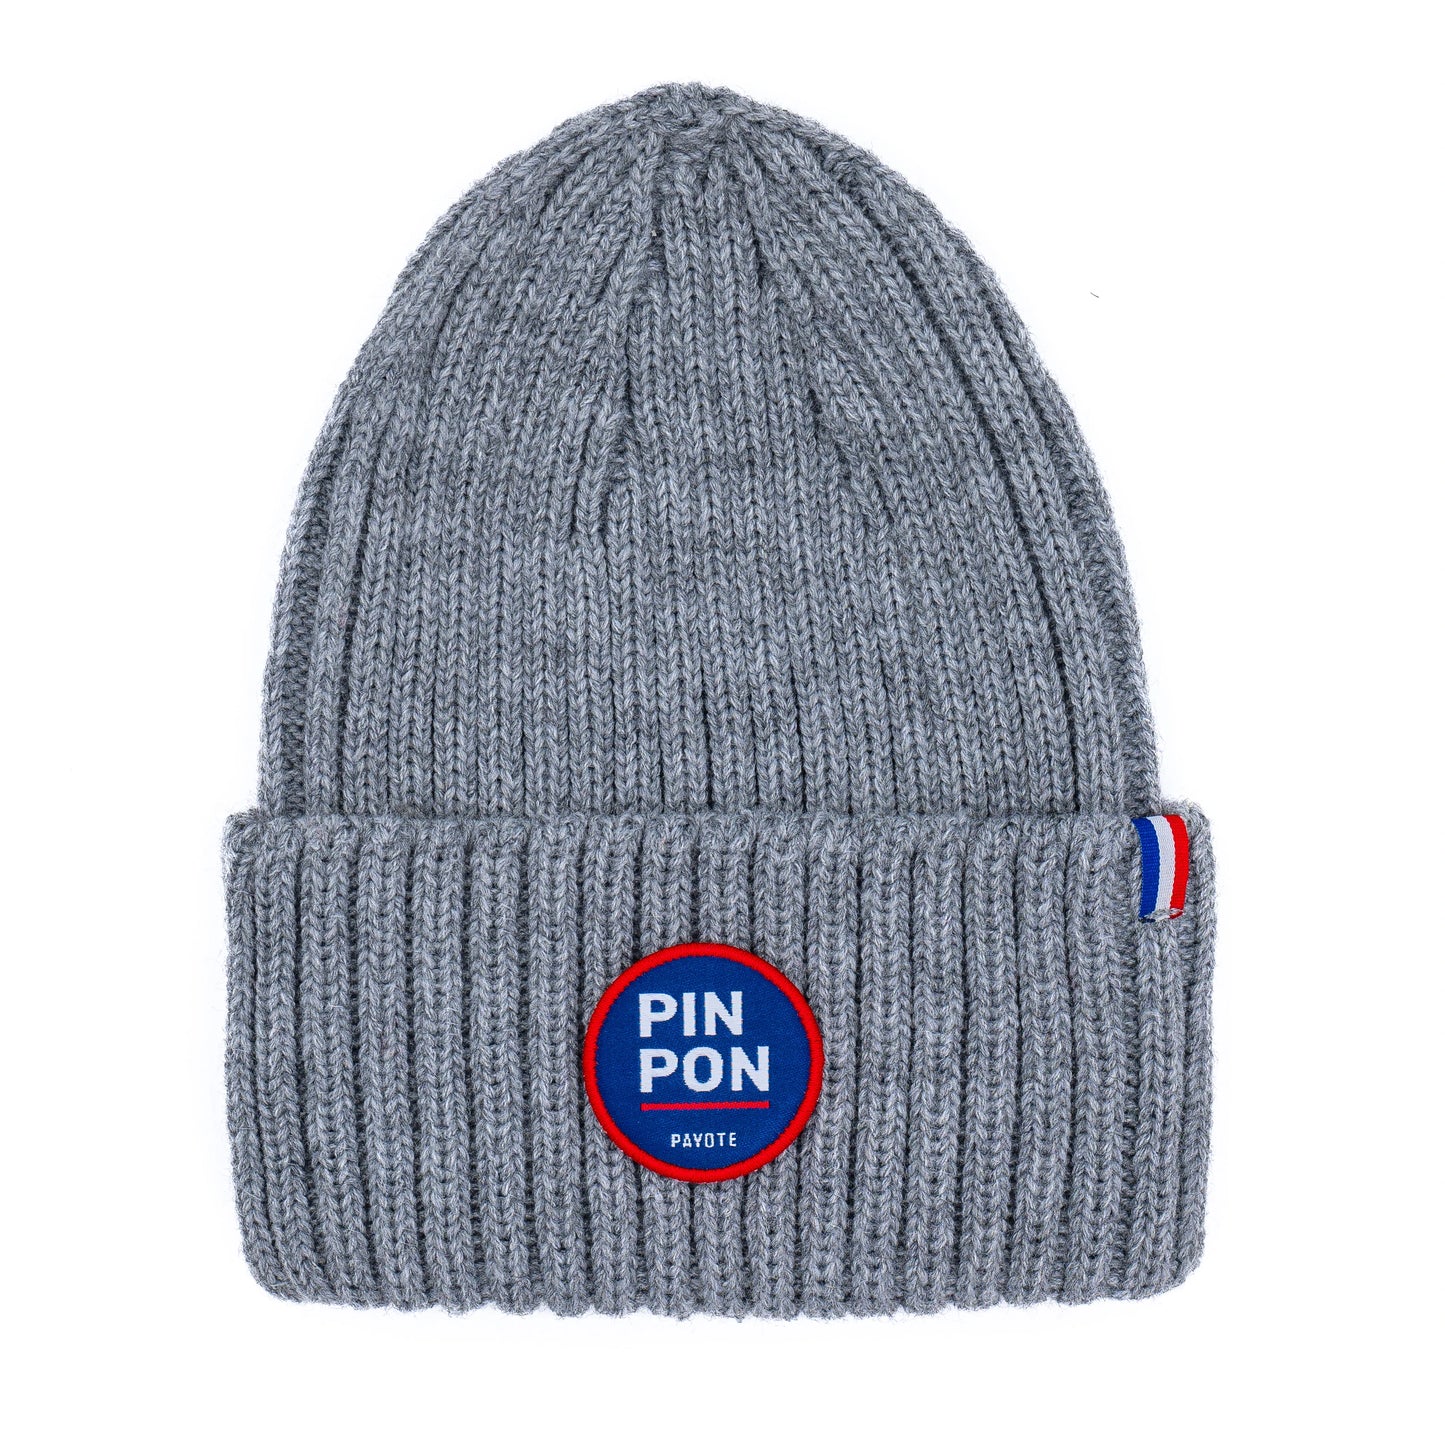 Bonnet Pin Pon gris et solidaire